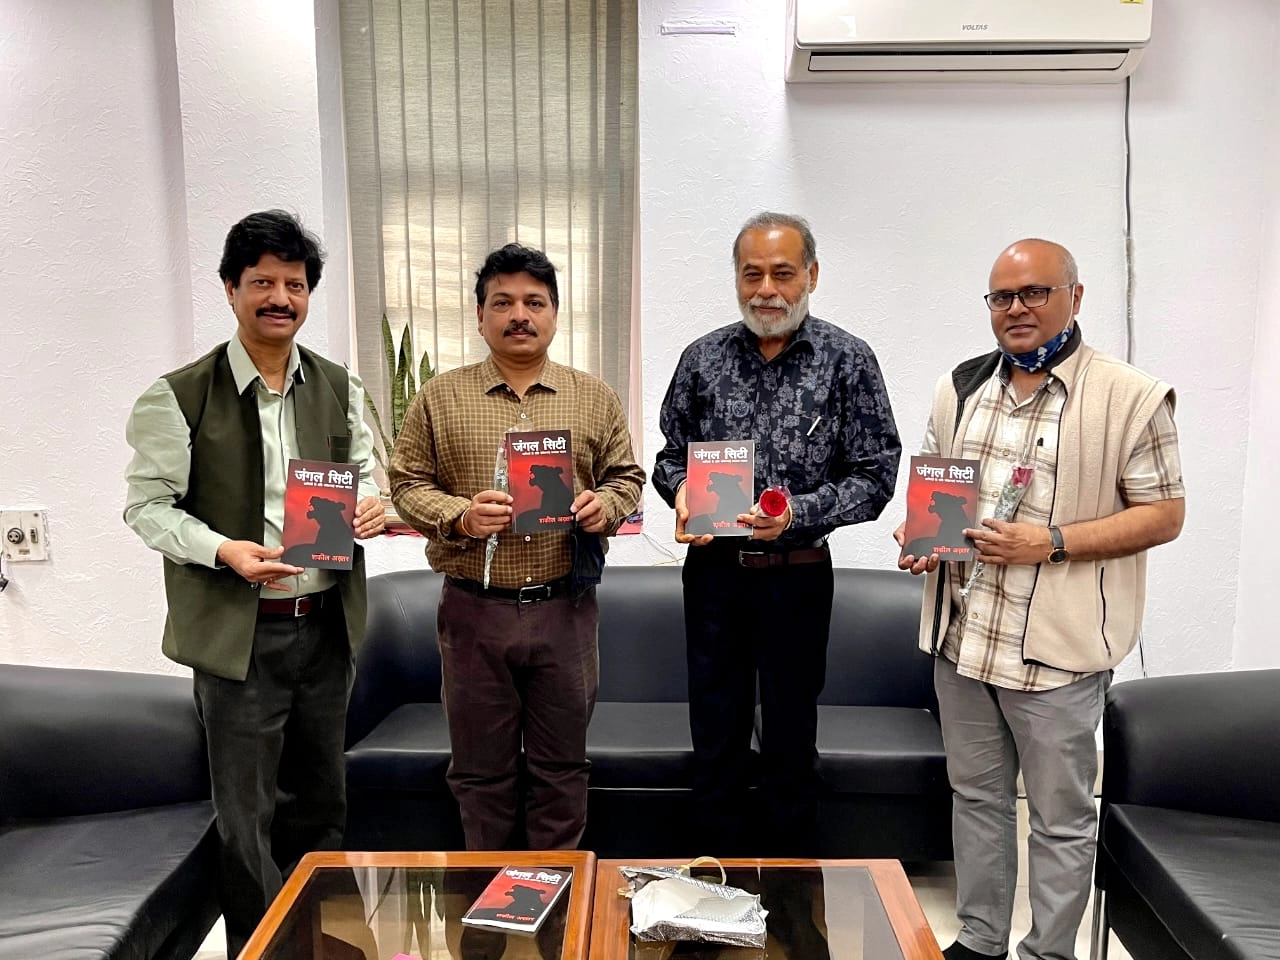 Book launch: 'जंगल सिटी' का एनएसडी में विमोचन - Jangal city book launch